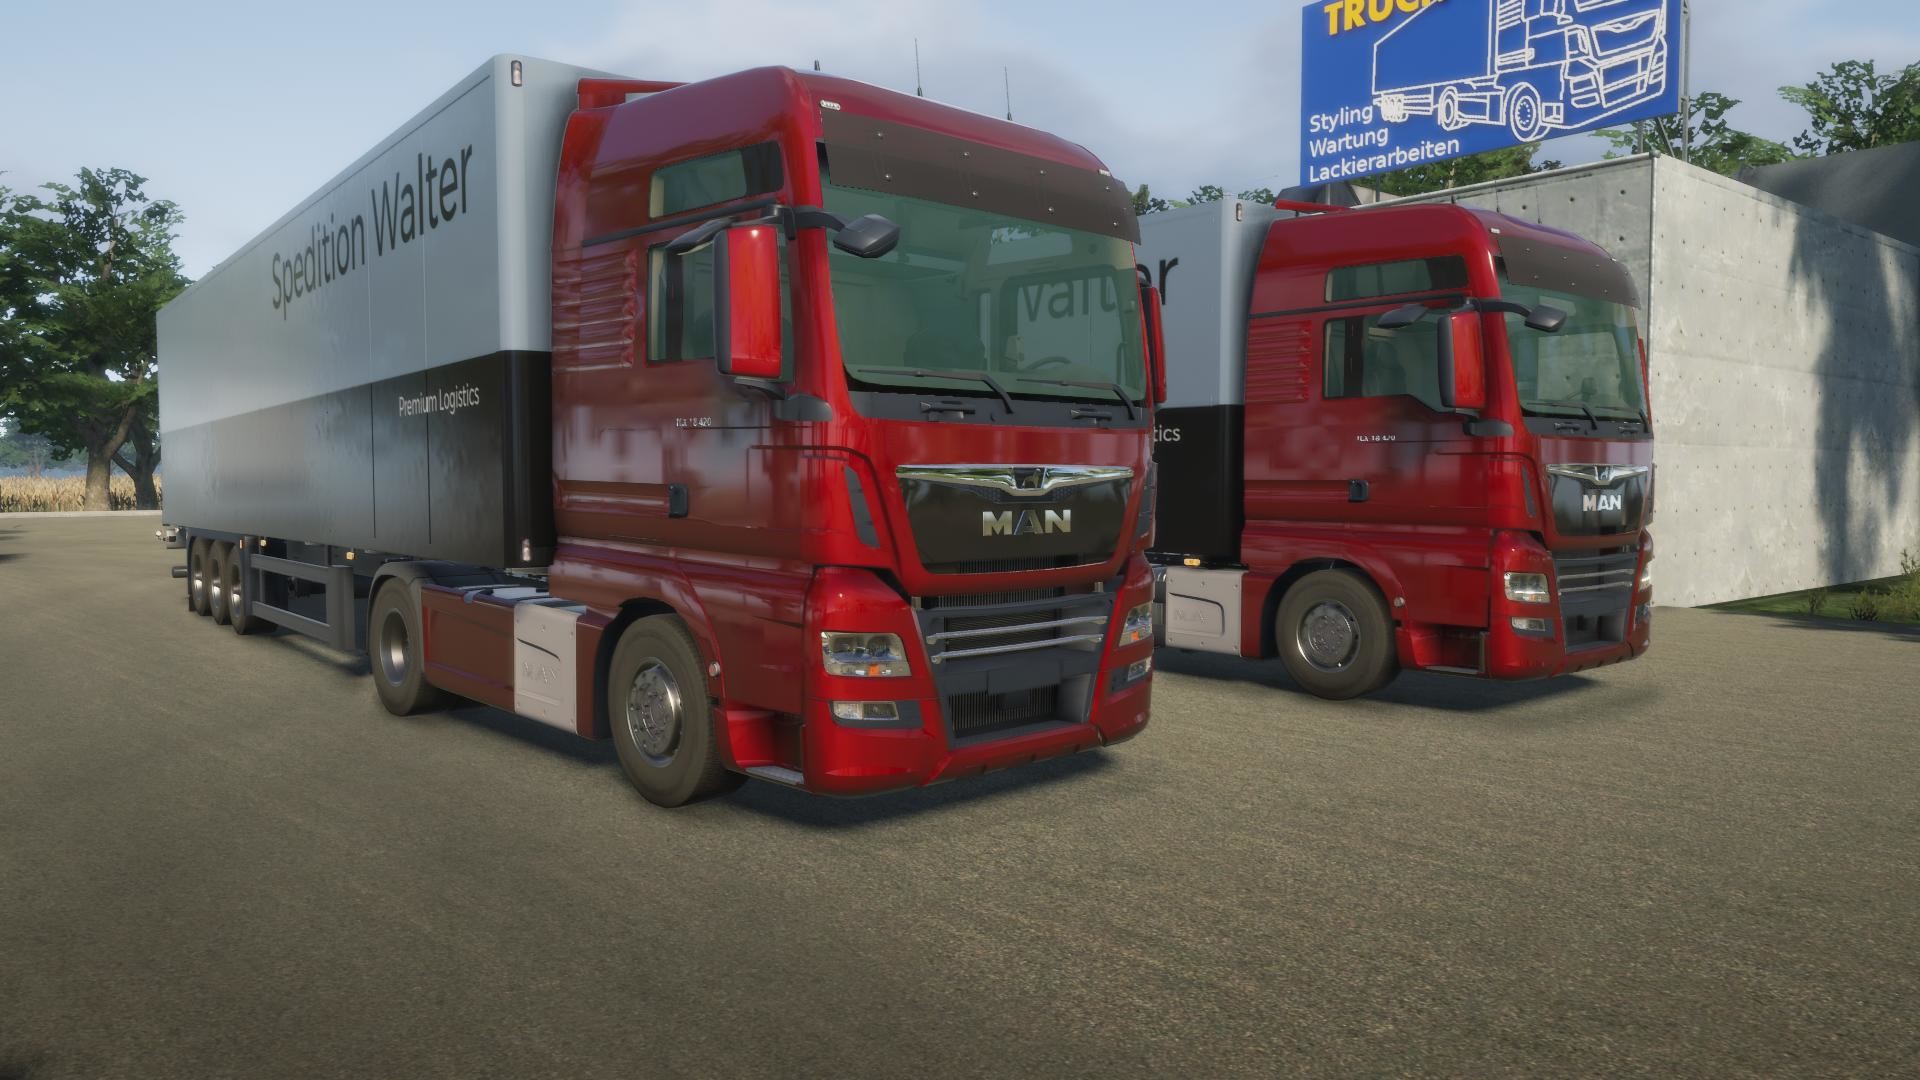 خرید بازی HDC: The Off-Road Truck Simulator برای PS5